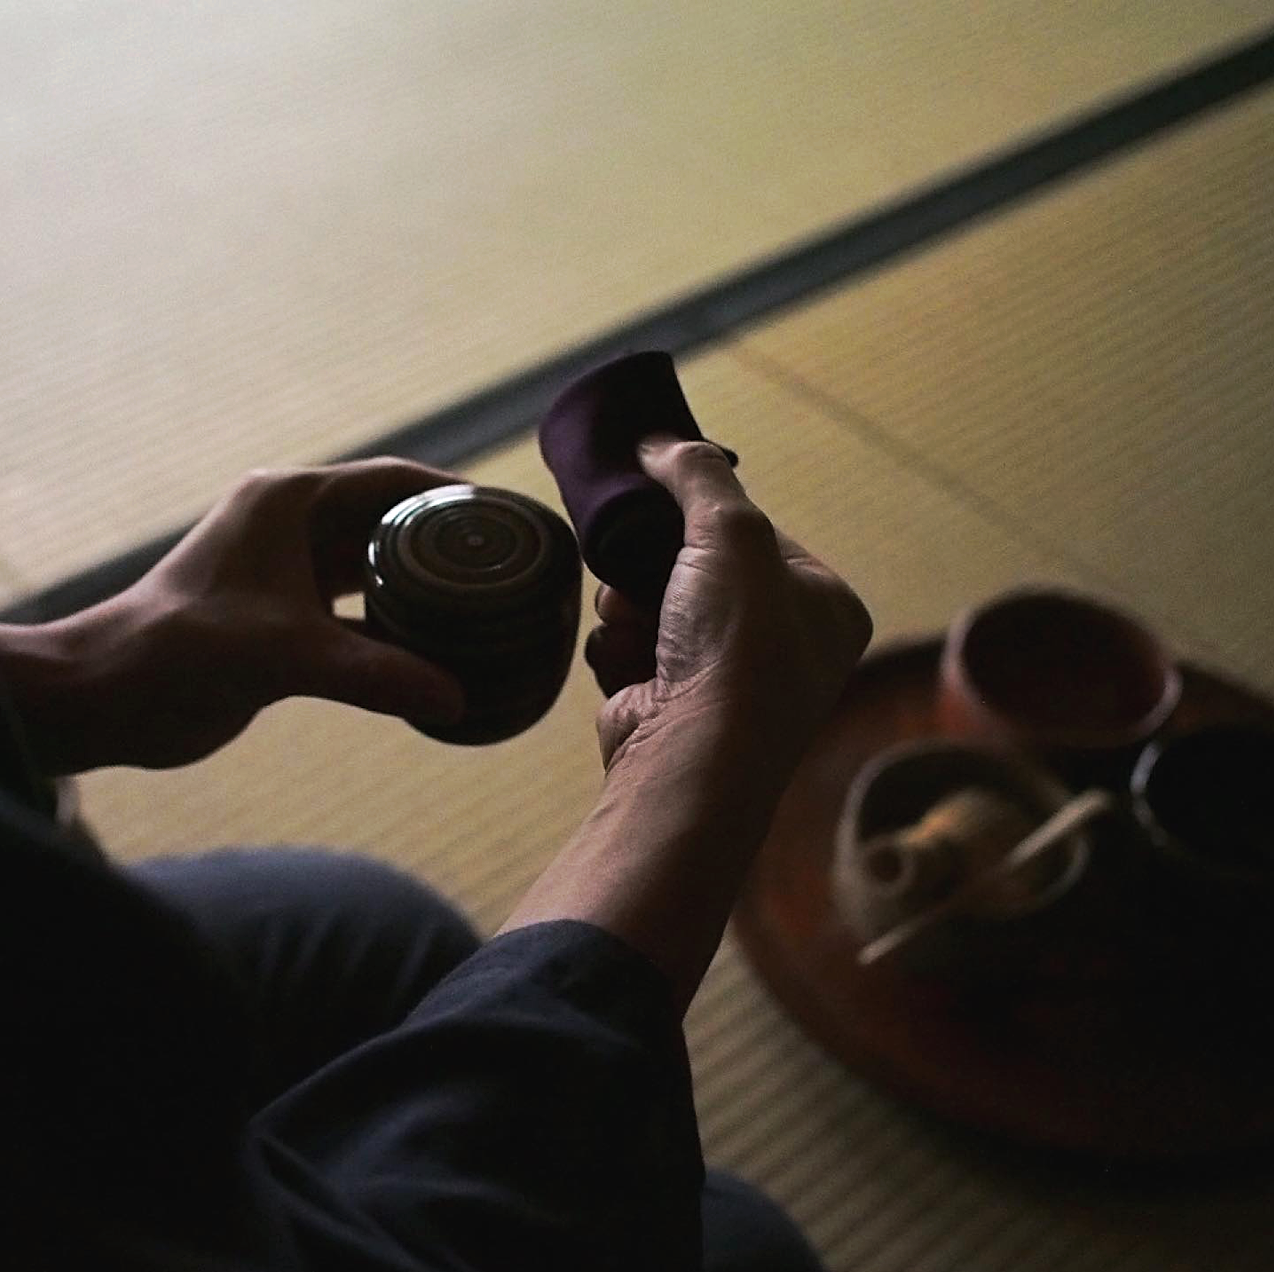 Cérémonie du thé au Japon - Encyclopédie de l'Histoire du Monde